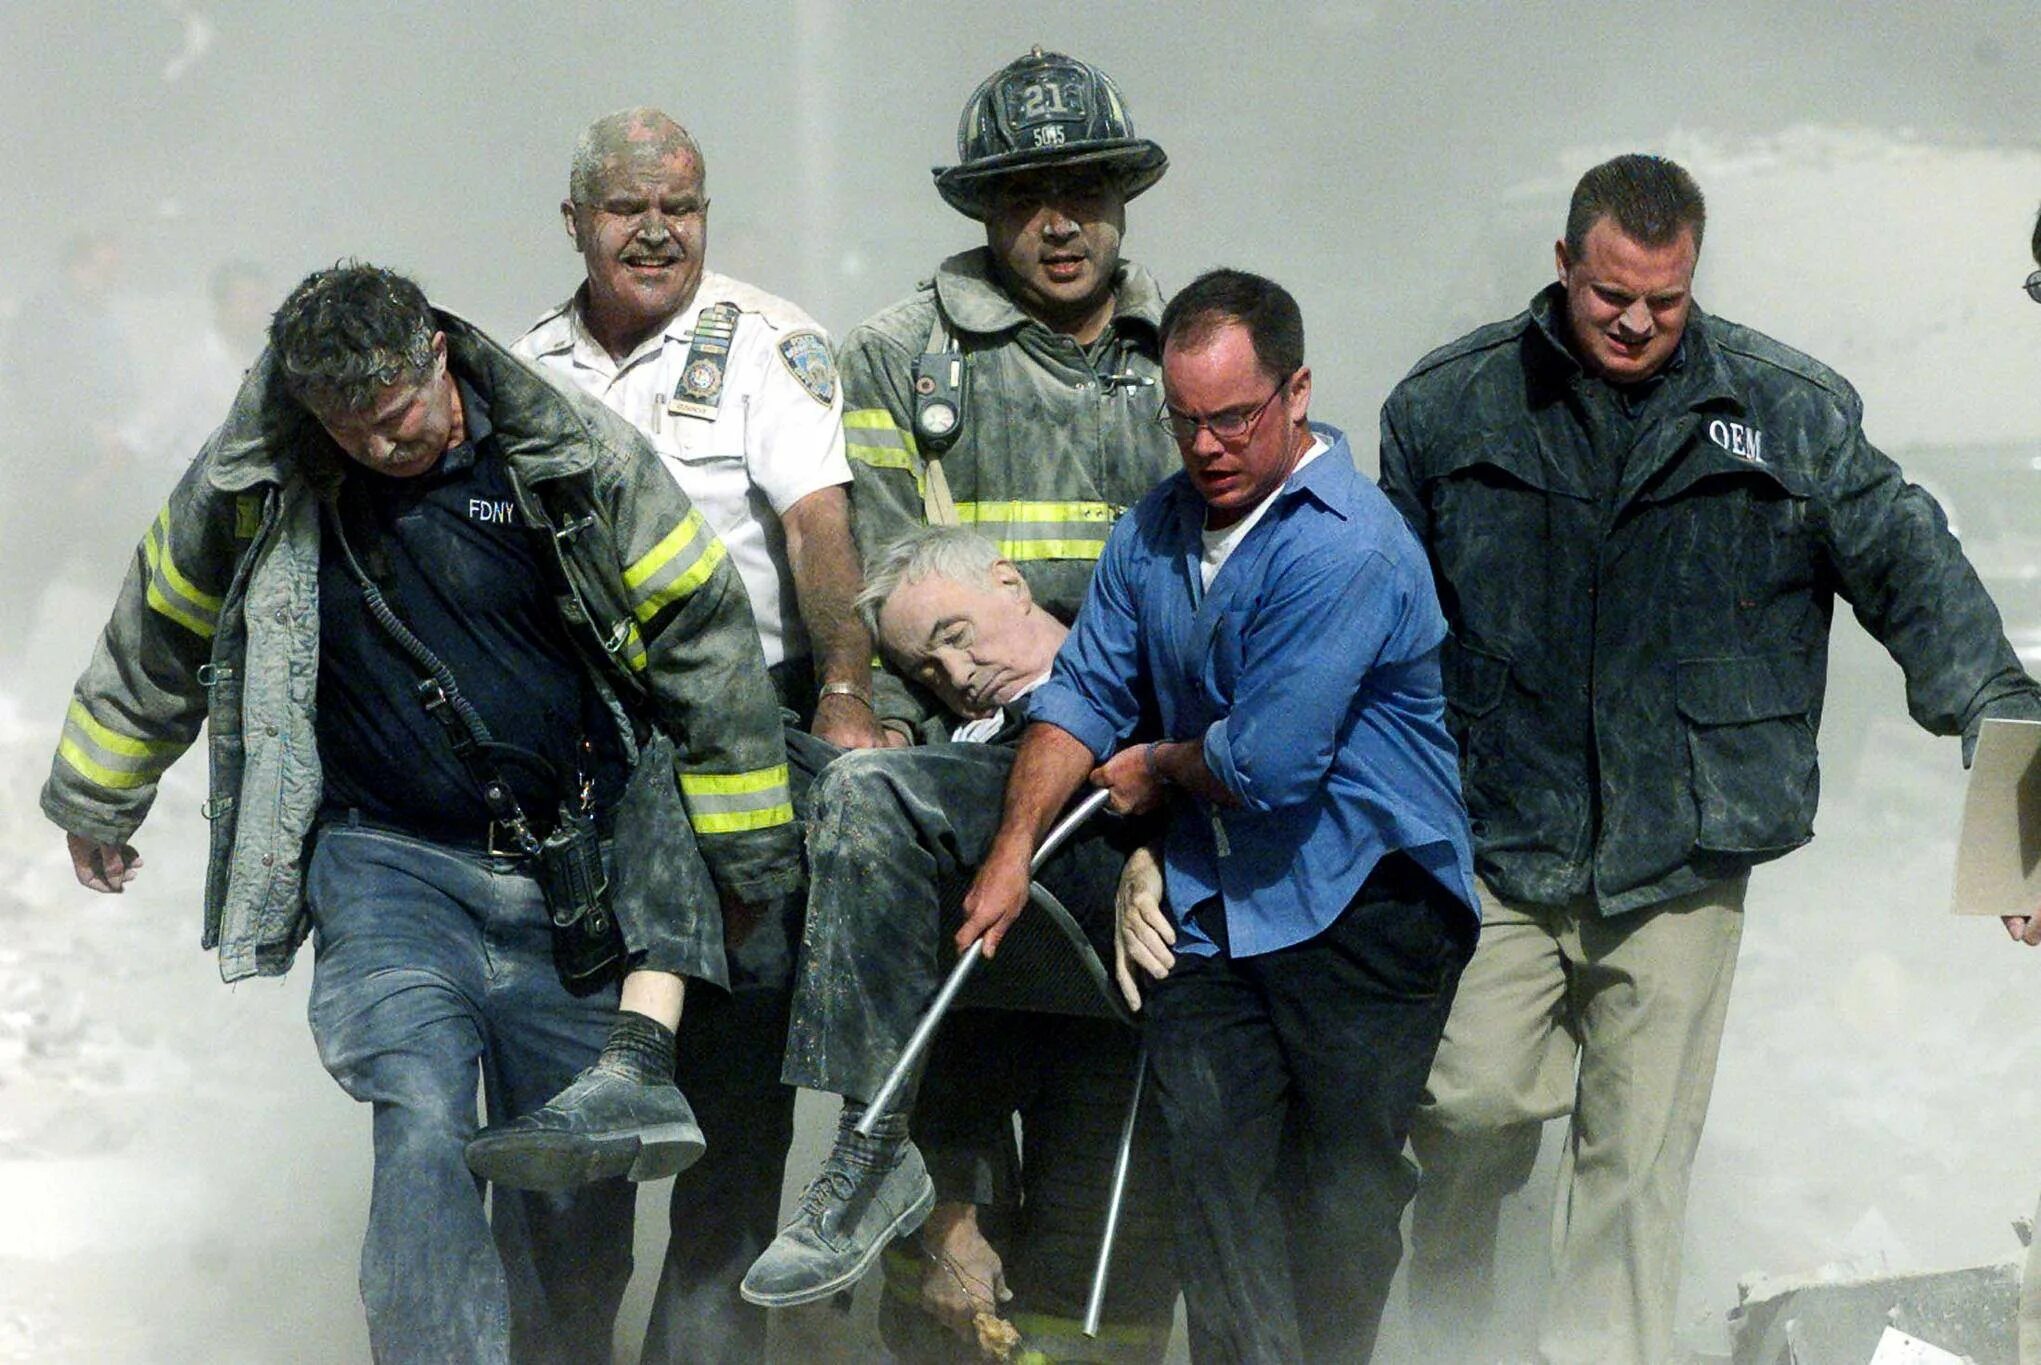 Спасатели 11 сентября 2001. Теракт в Нью-Йорке 11 сентября 2001. Башни Близнецы 11 сентября жертвы. Число погибших 11 сентября 2001. Сколько умерло людей во время теракта